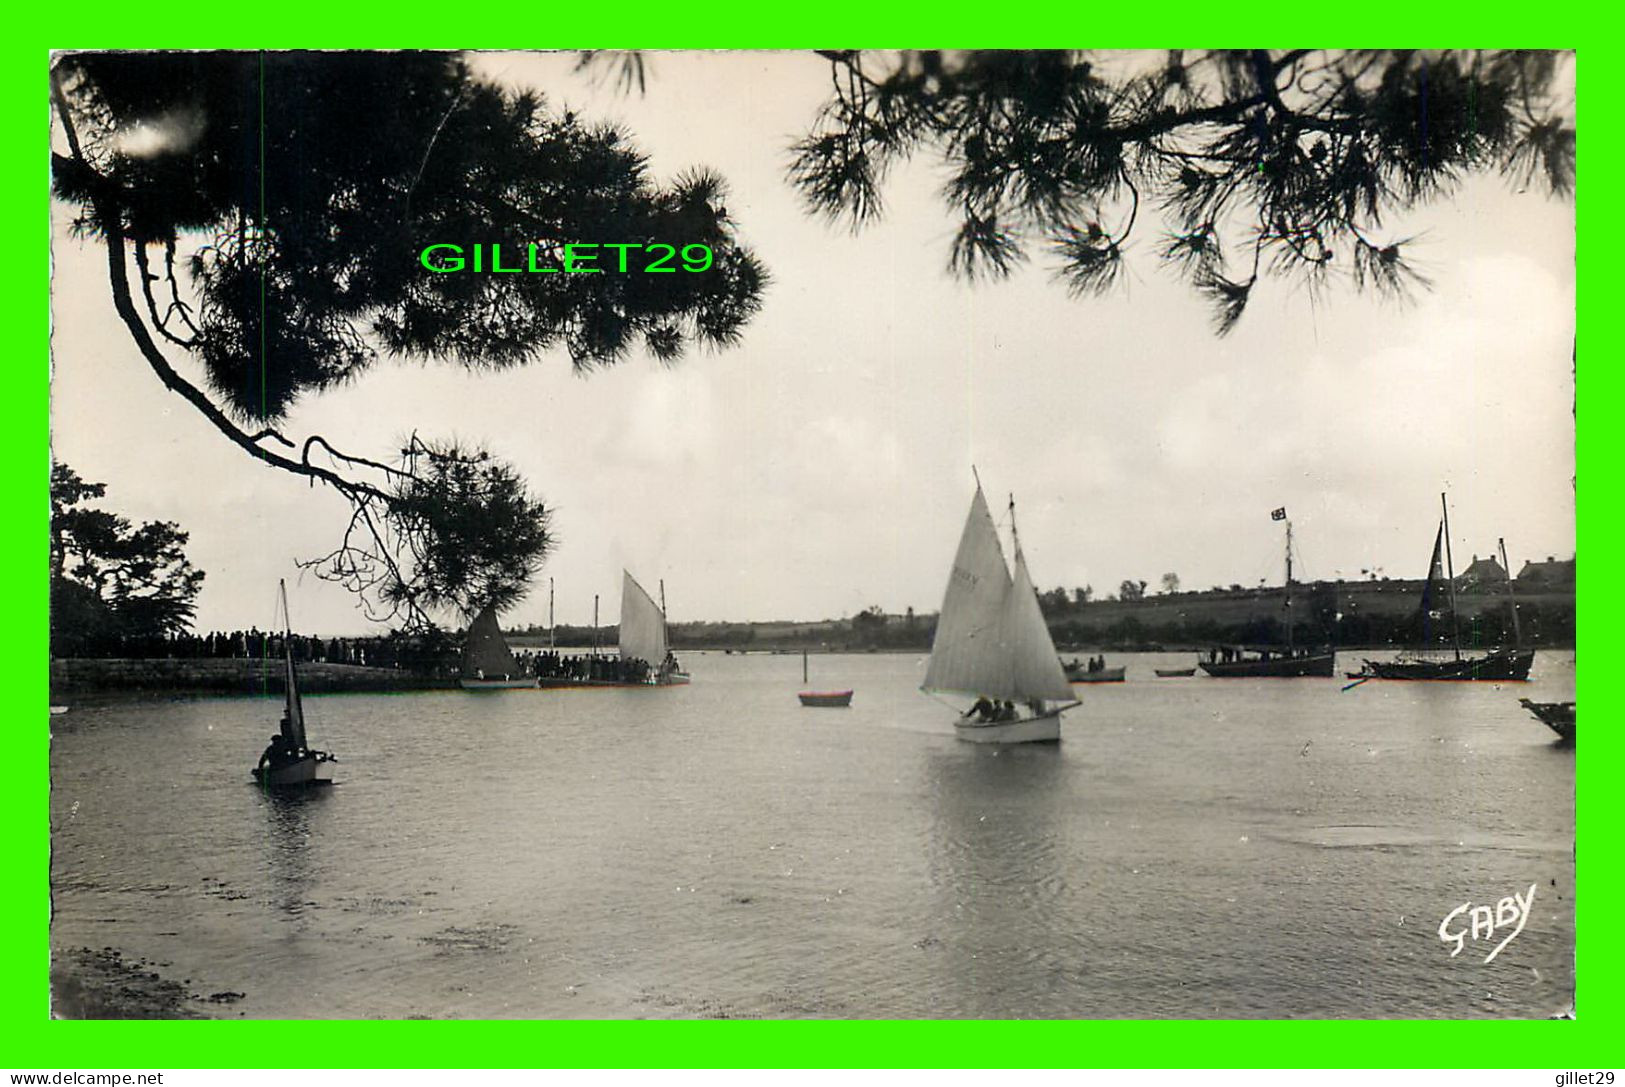 SHIP, BATEAUX, VOILIERS - CONLEAU (56) LES RÉGATES - CIRCULÉE EN 1938 - ARTAUD PÈRE ET FILS EDITEURS - - Segelboote